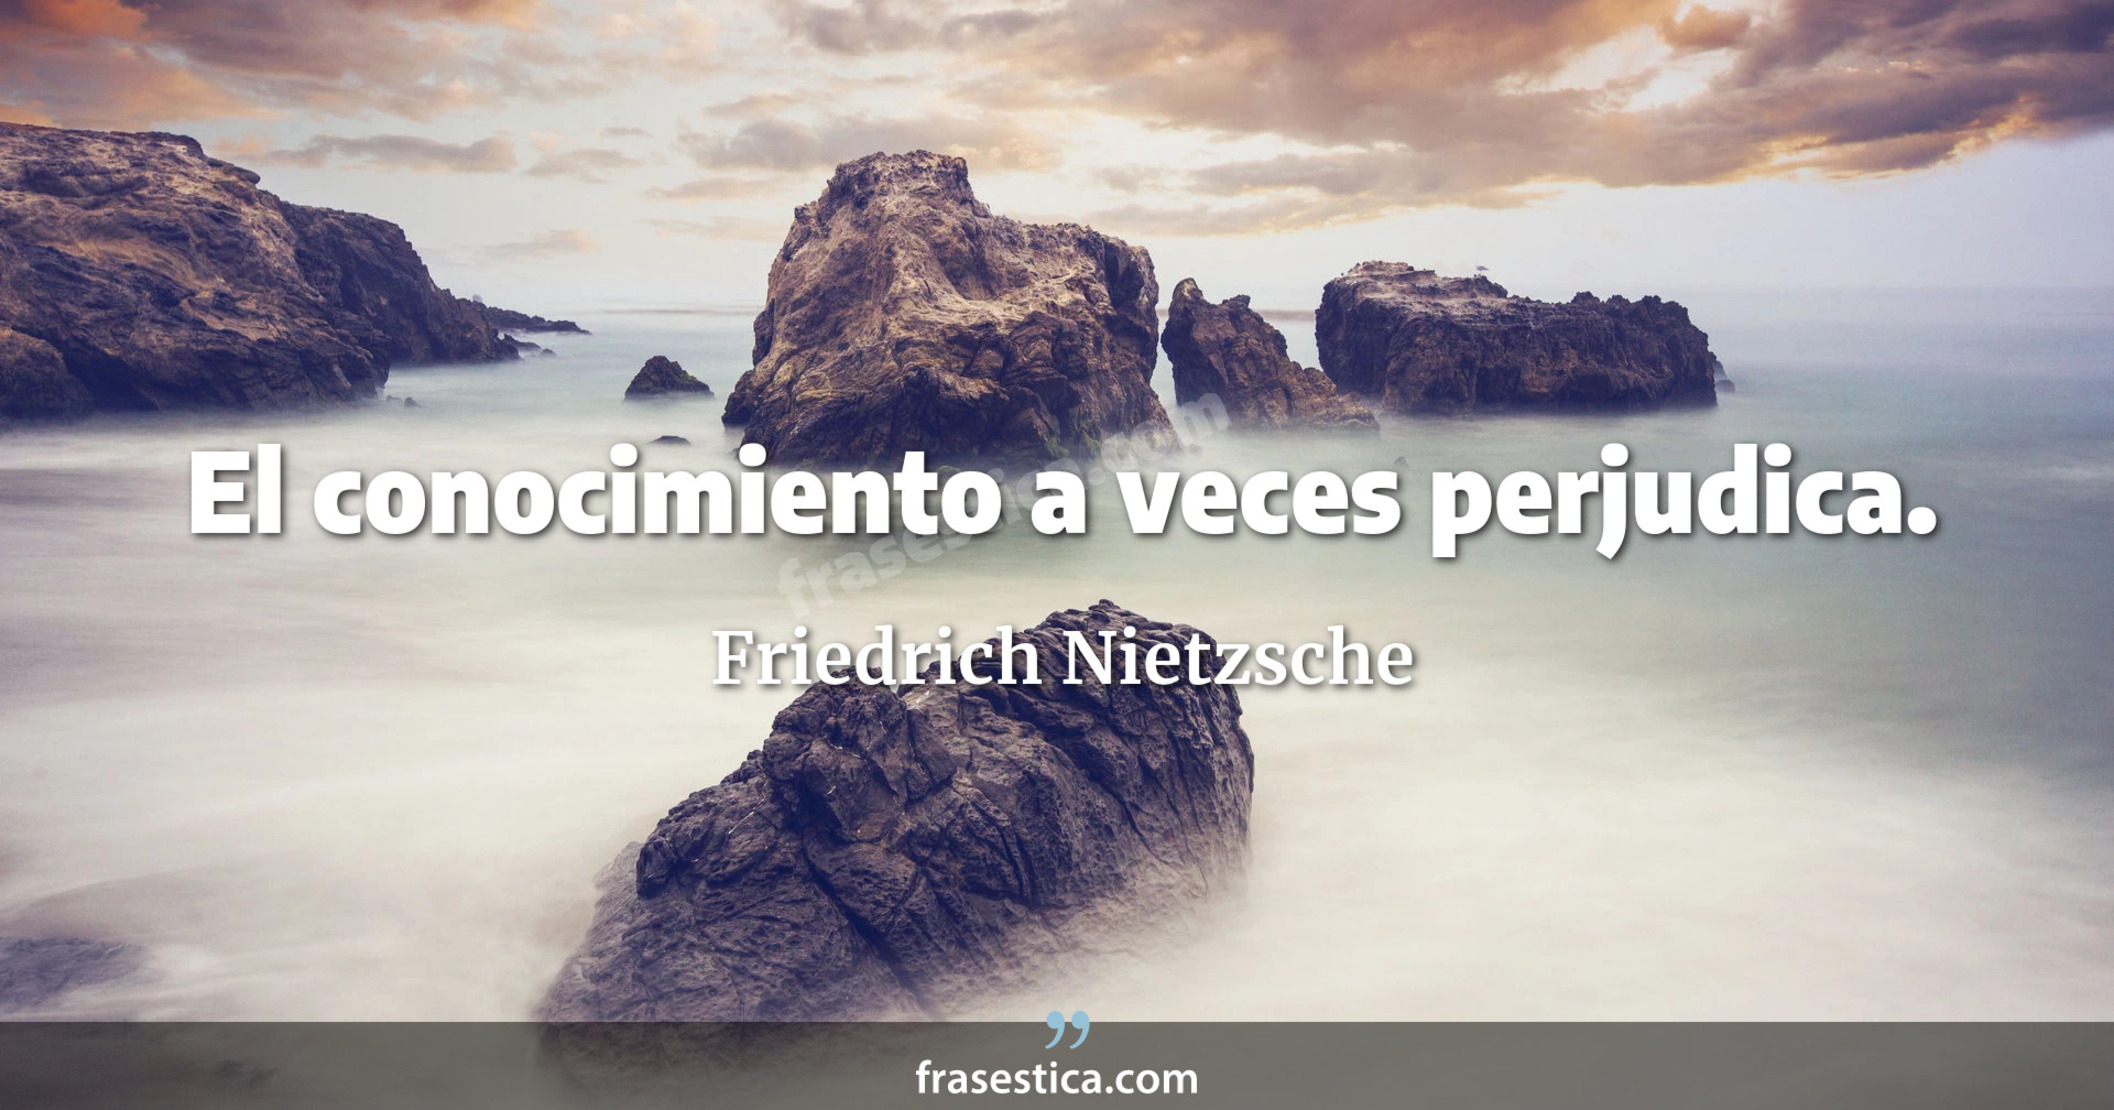 El conocimiento a veces perjudica. - Friedrich Nietzsche